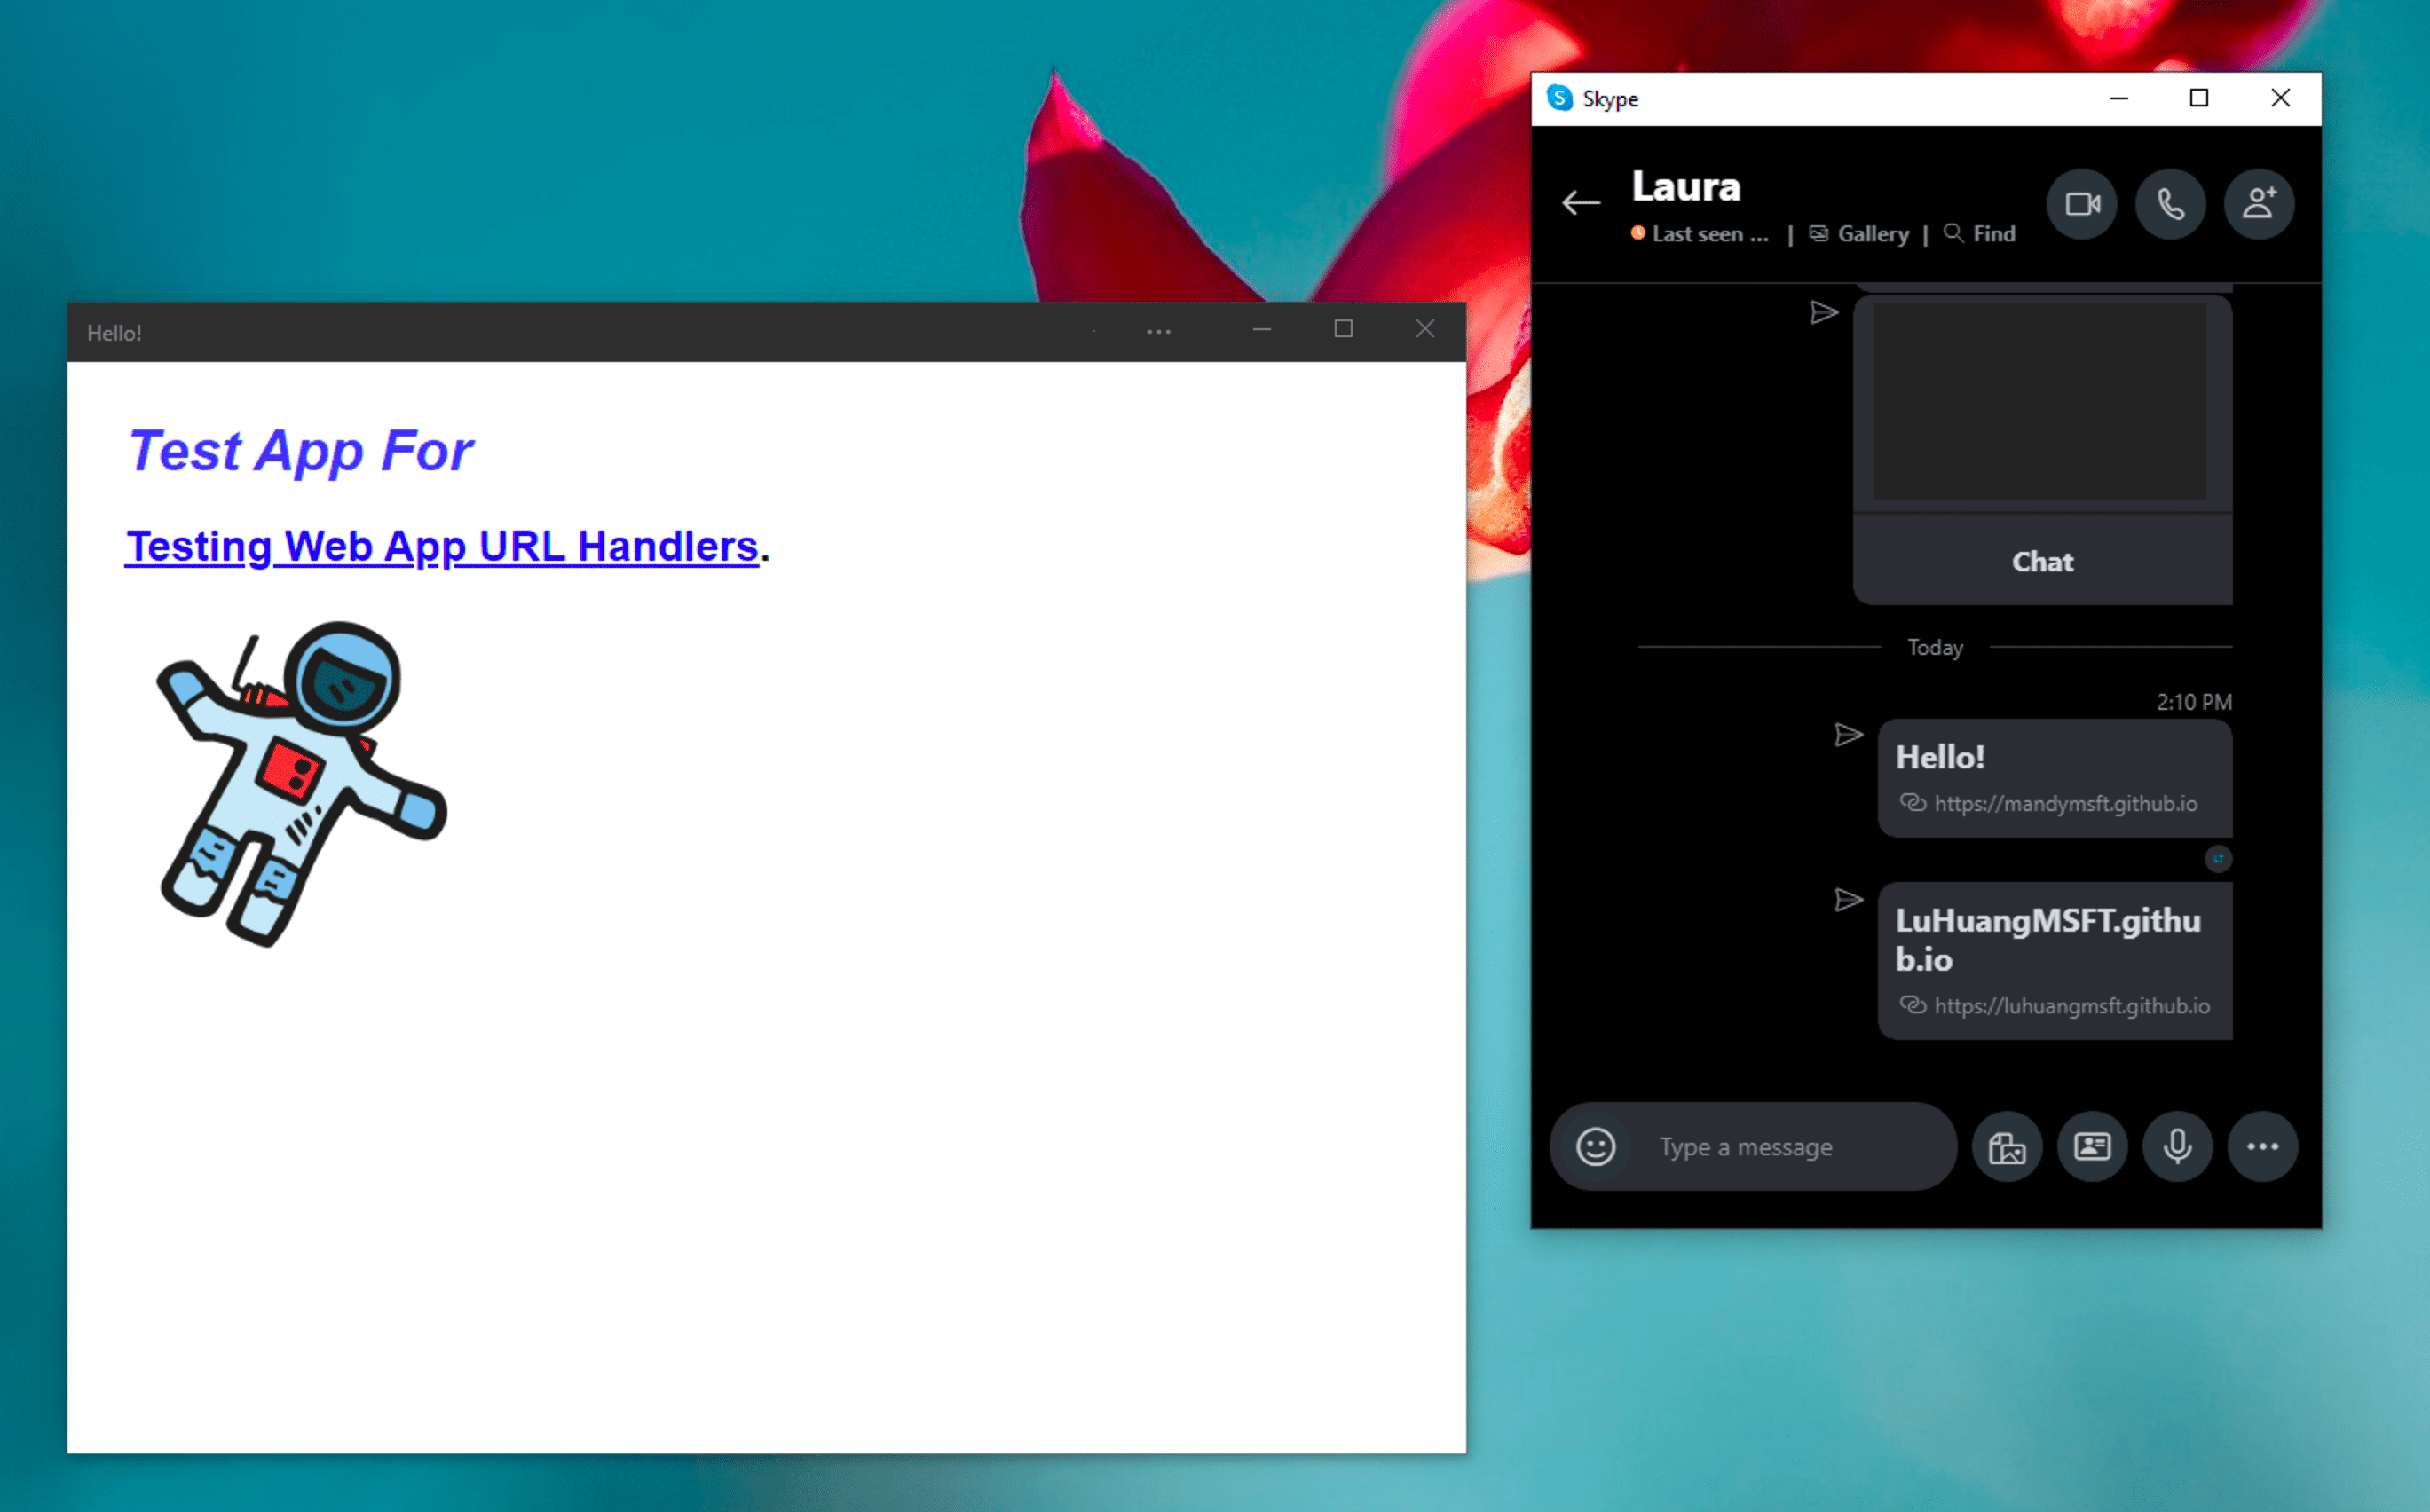 इंस्टॉल किए गए डेमो PWA के बगल में मौजूद, Windows Skype का इंस्टैंट मैसेजिंग ऐप्लिकेशन. यह ऐप्लिकेशन, Skype चैट मैसेज में मैनेज किए जा रहे लिंक पर क्लिक करने के बाद स्टैंडअलोन मोड में खुलता है.